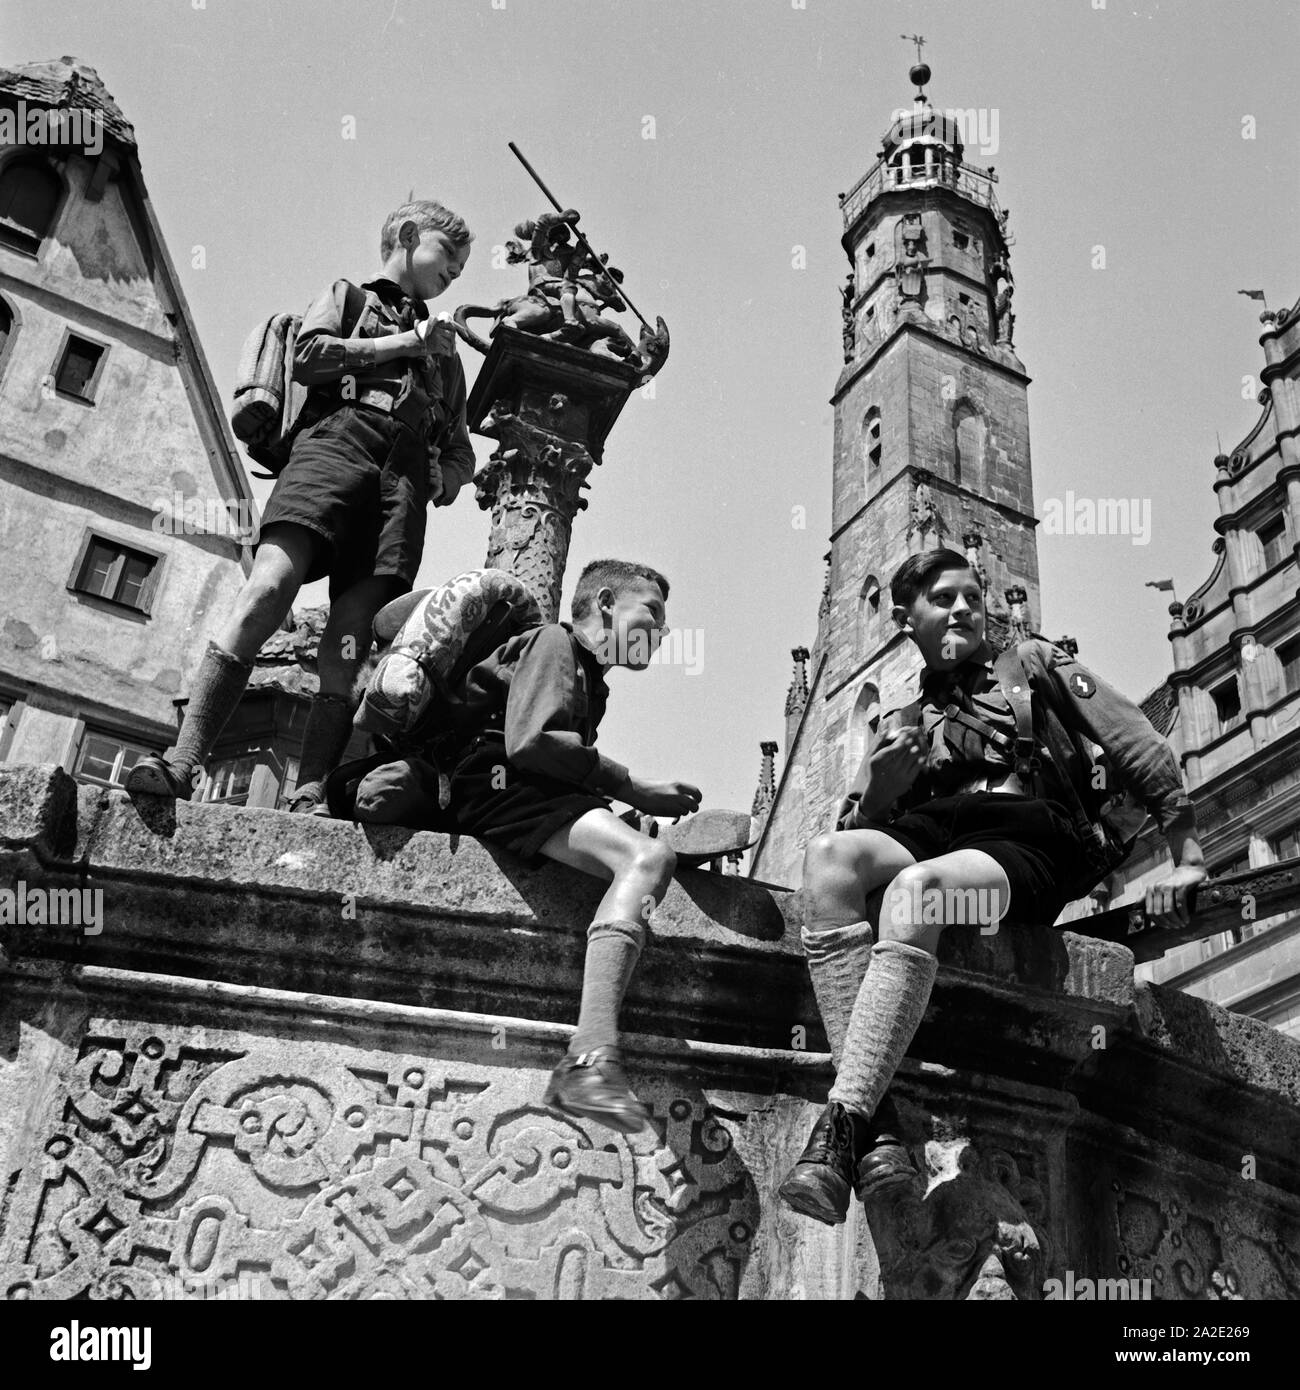 Drei Hitlerjungen a Rothenburg ob der Tauber, Deutschland 1930er Jahre. Tre giovani di Hitler a Rothenburg ob der Tauber, Germania 1930s. Foto Stock